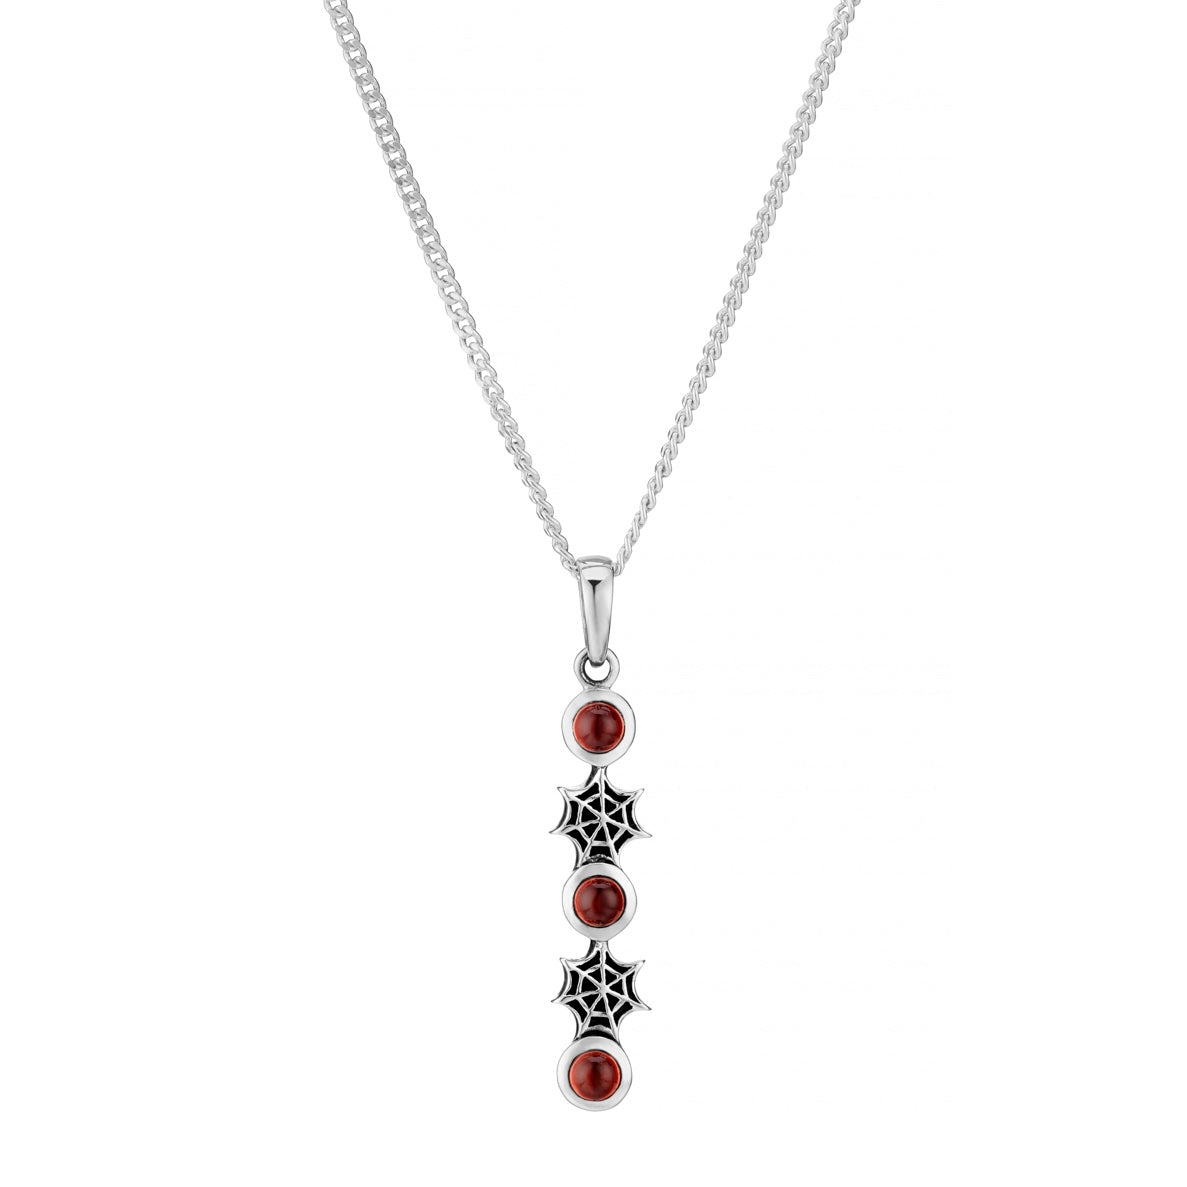 SPIDERELLA - Garnet & Sterling Silver Necklace